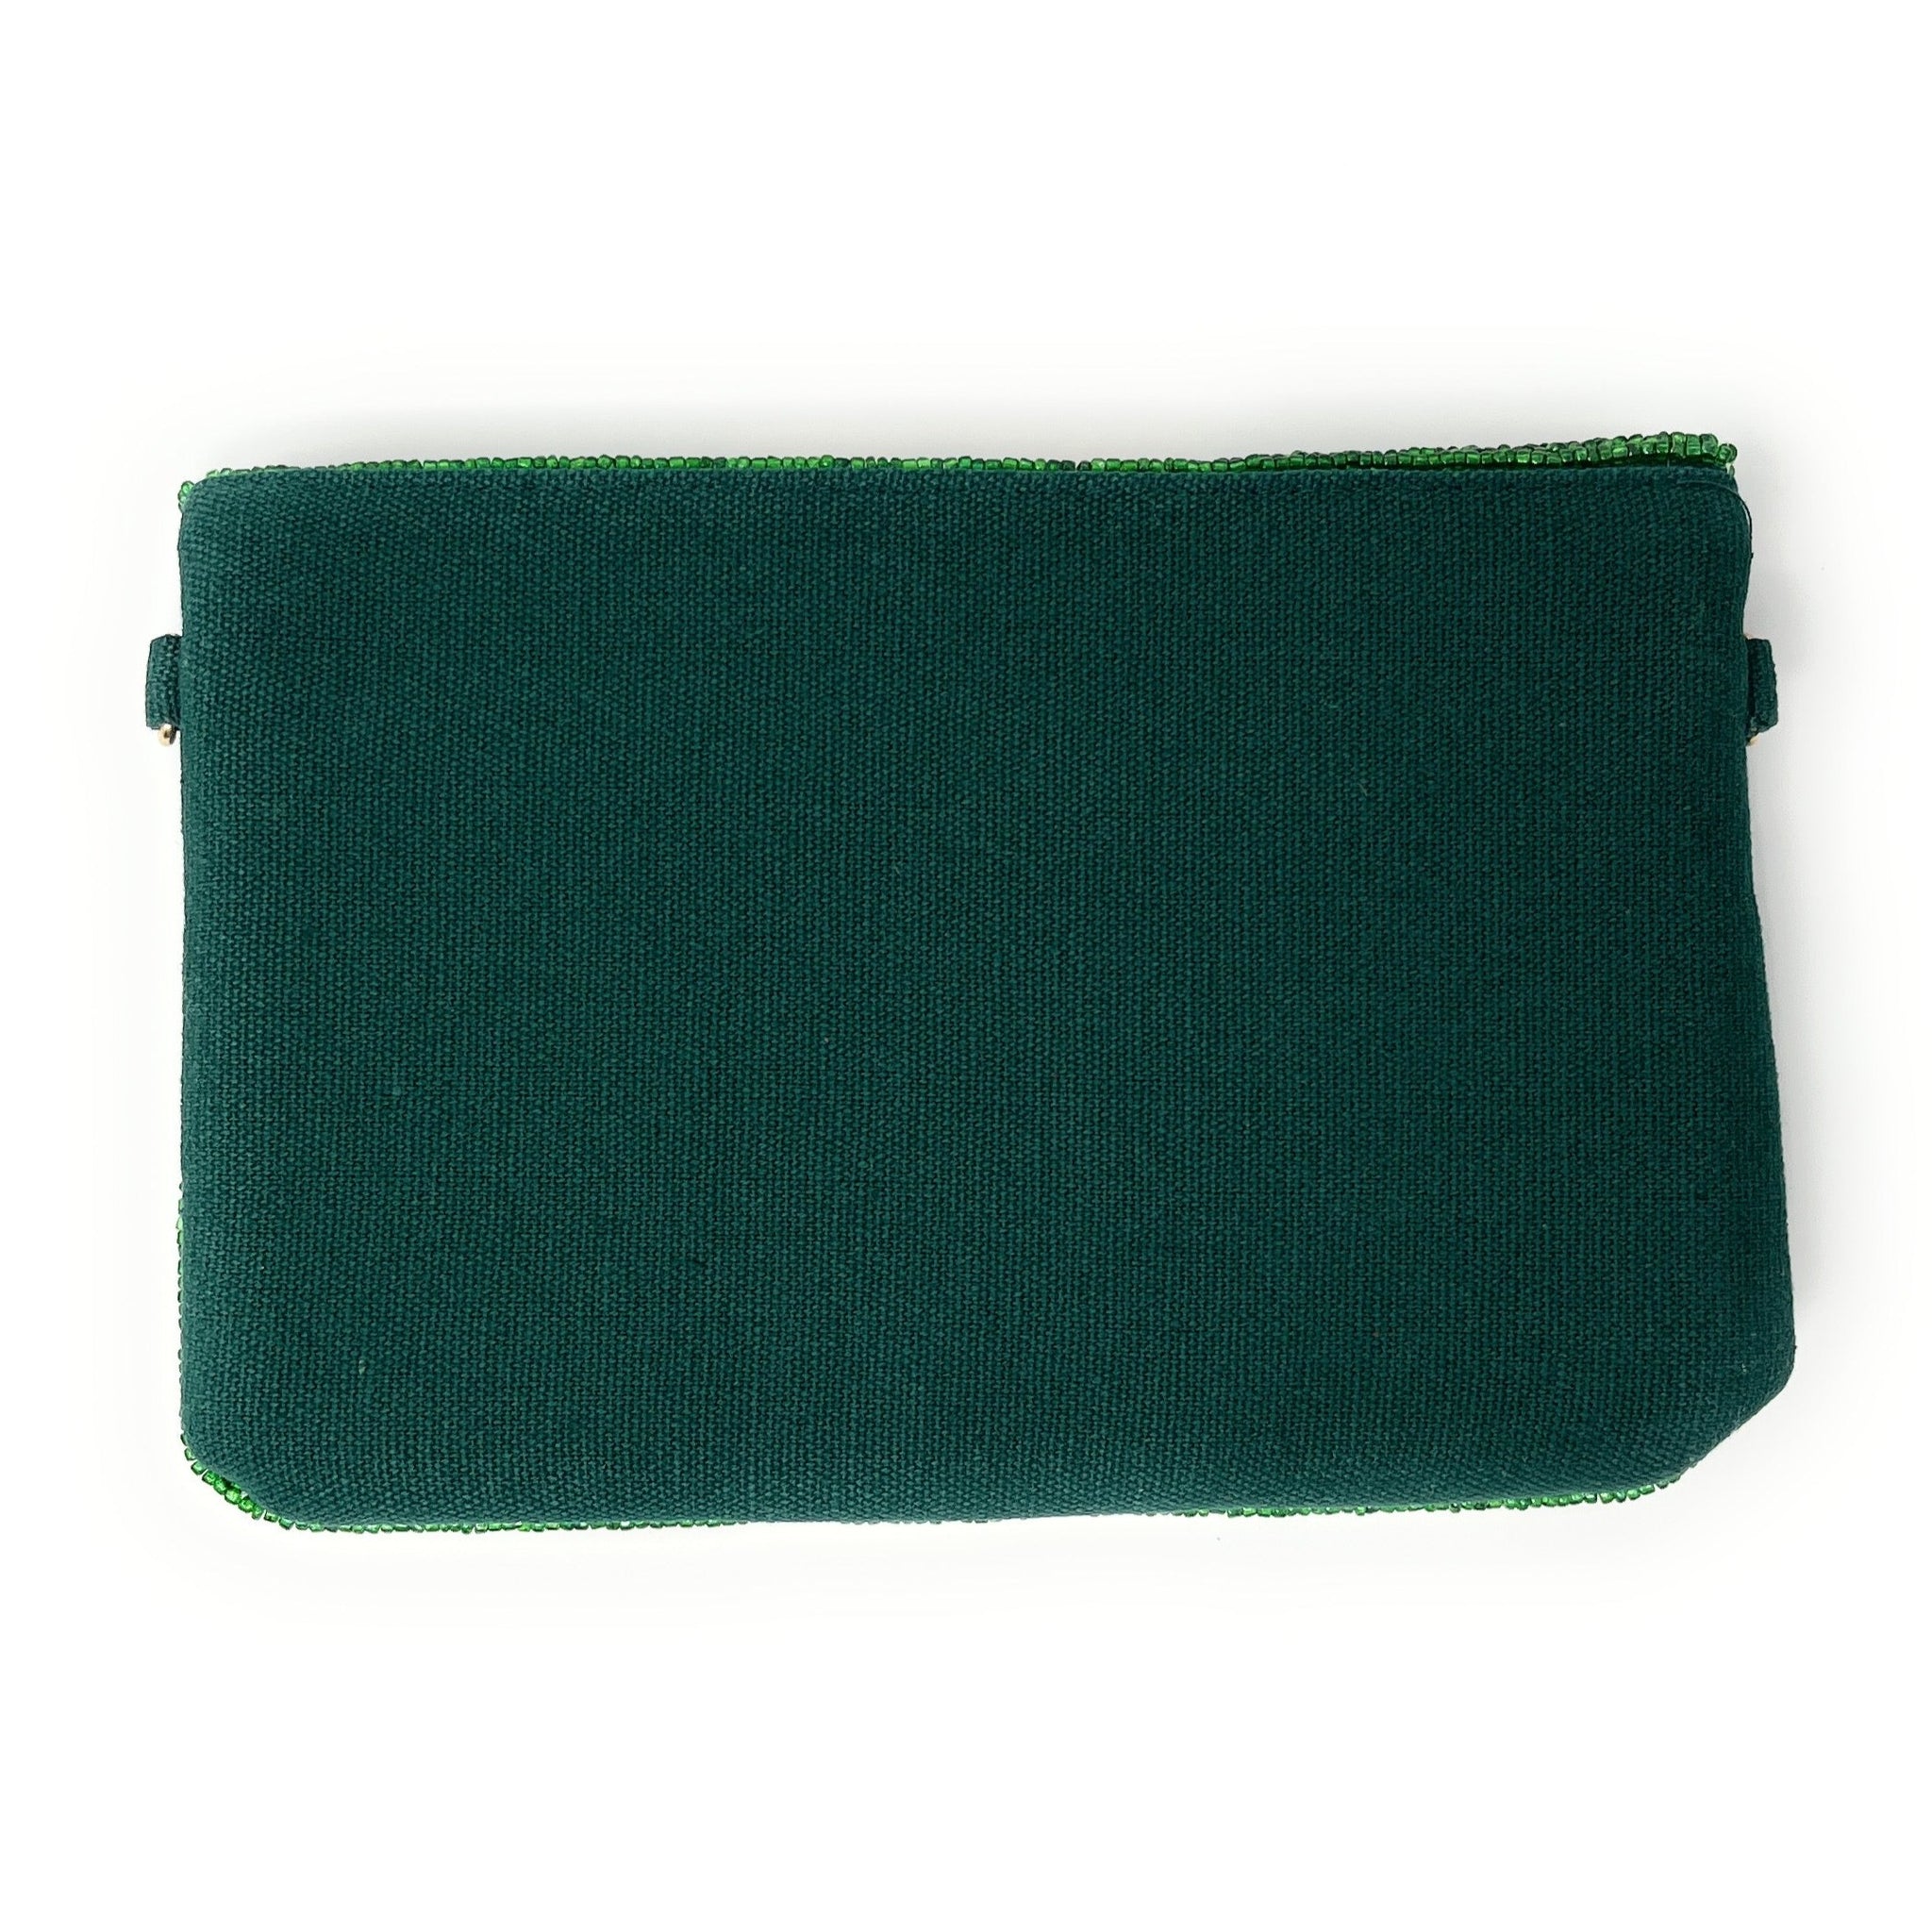 Rhinestone Crystal Envelope Clutch Purse - Emerald Green